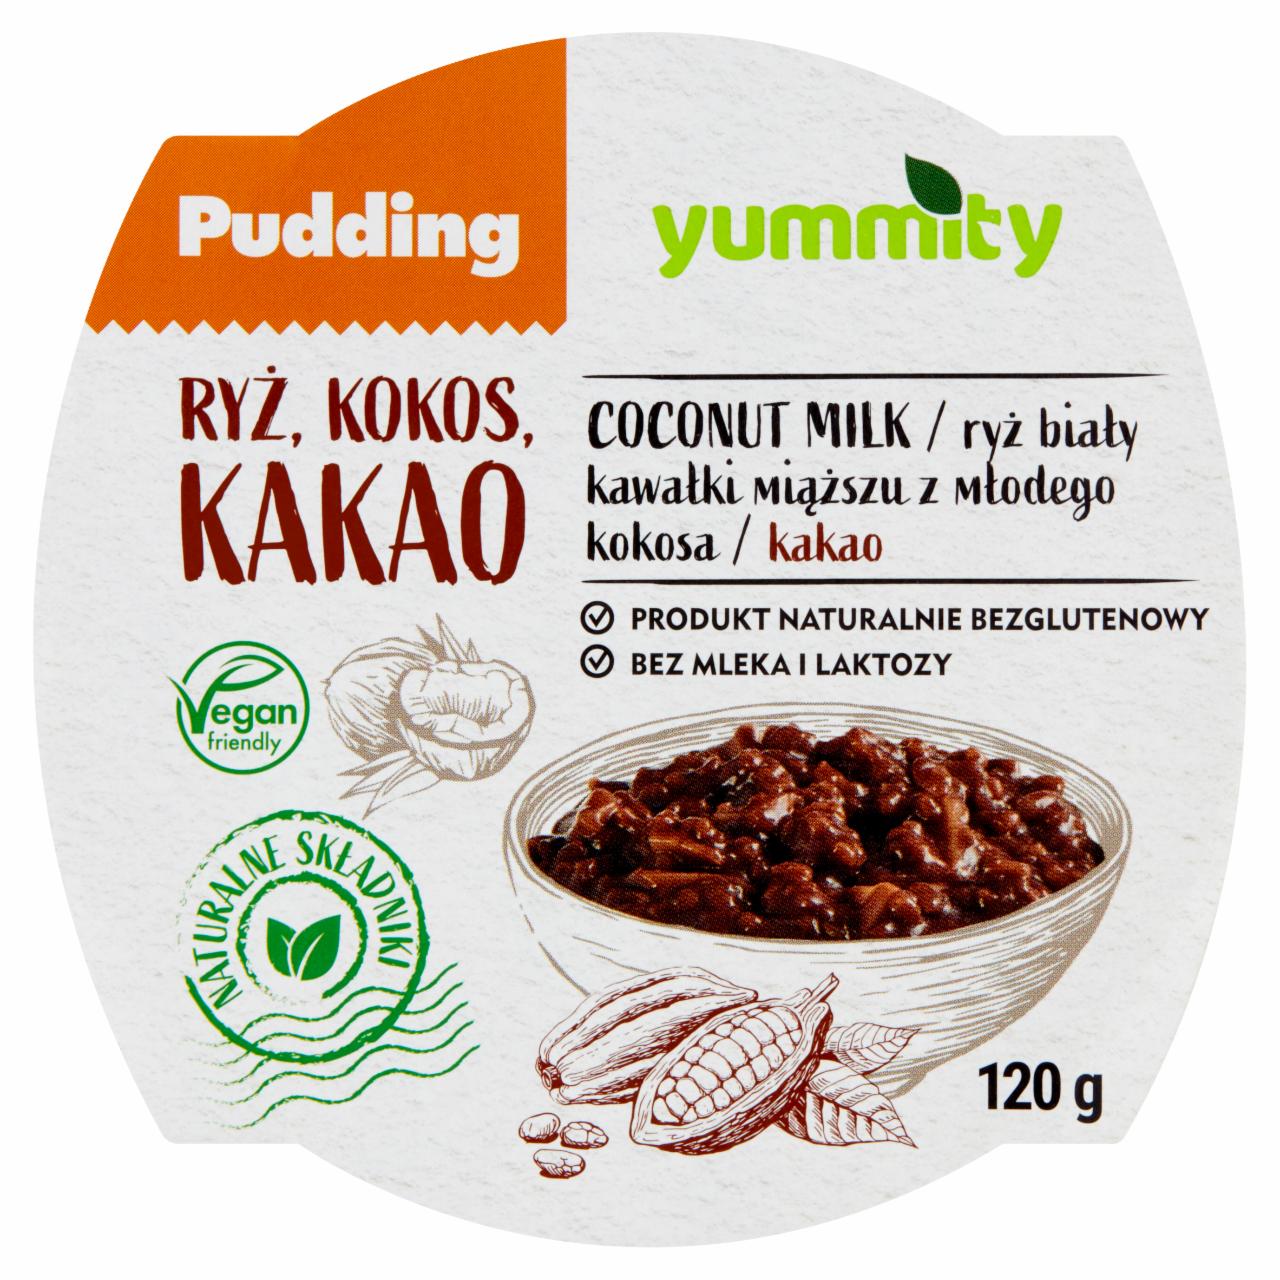 Zdjęcia - Yummity Bezglutenowy pudding ryżowy z kokosem i kakao 120 g